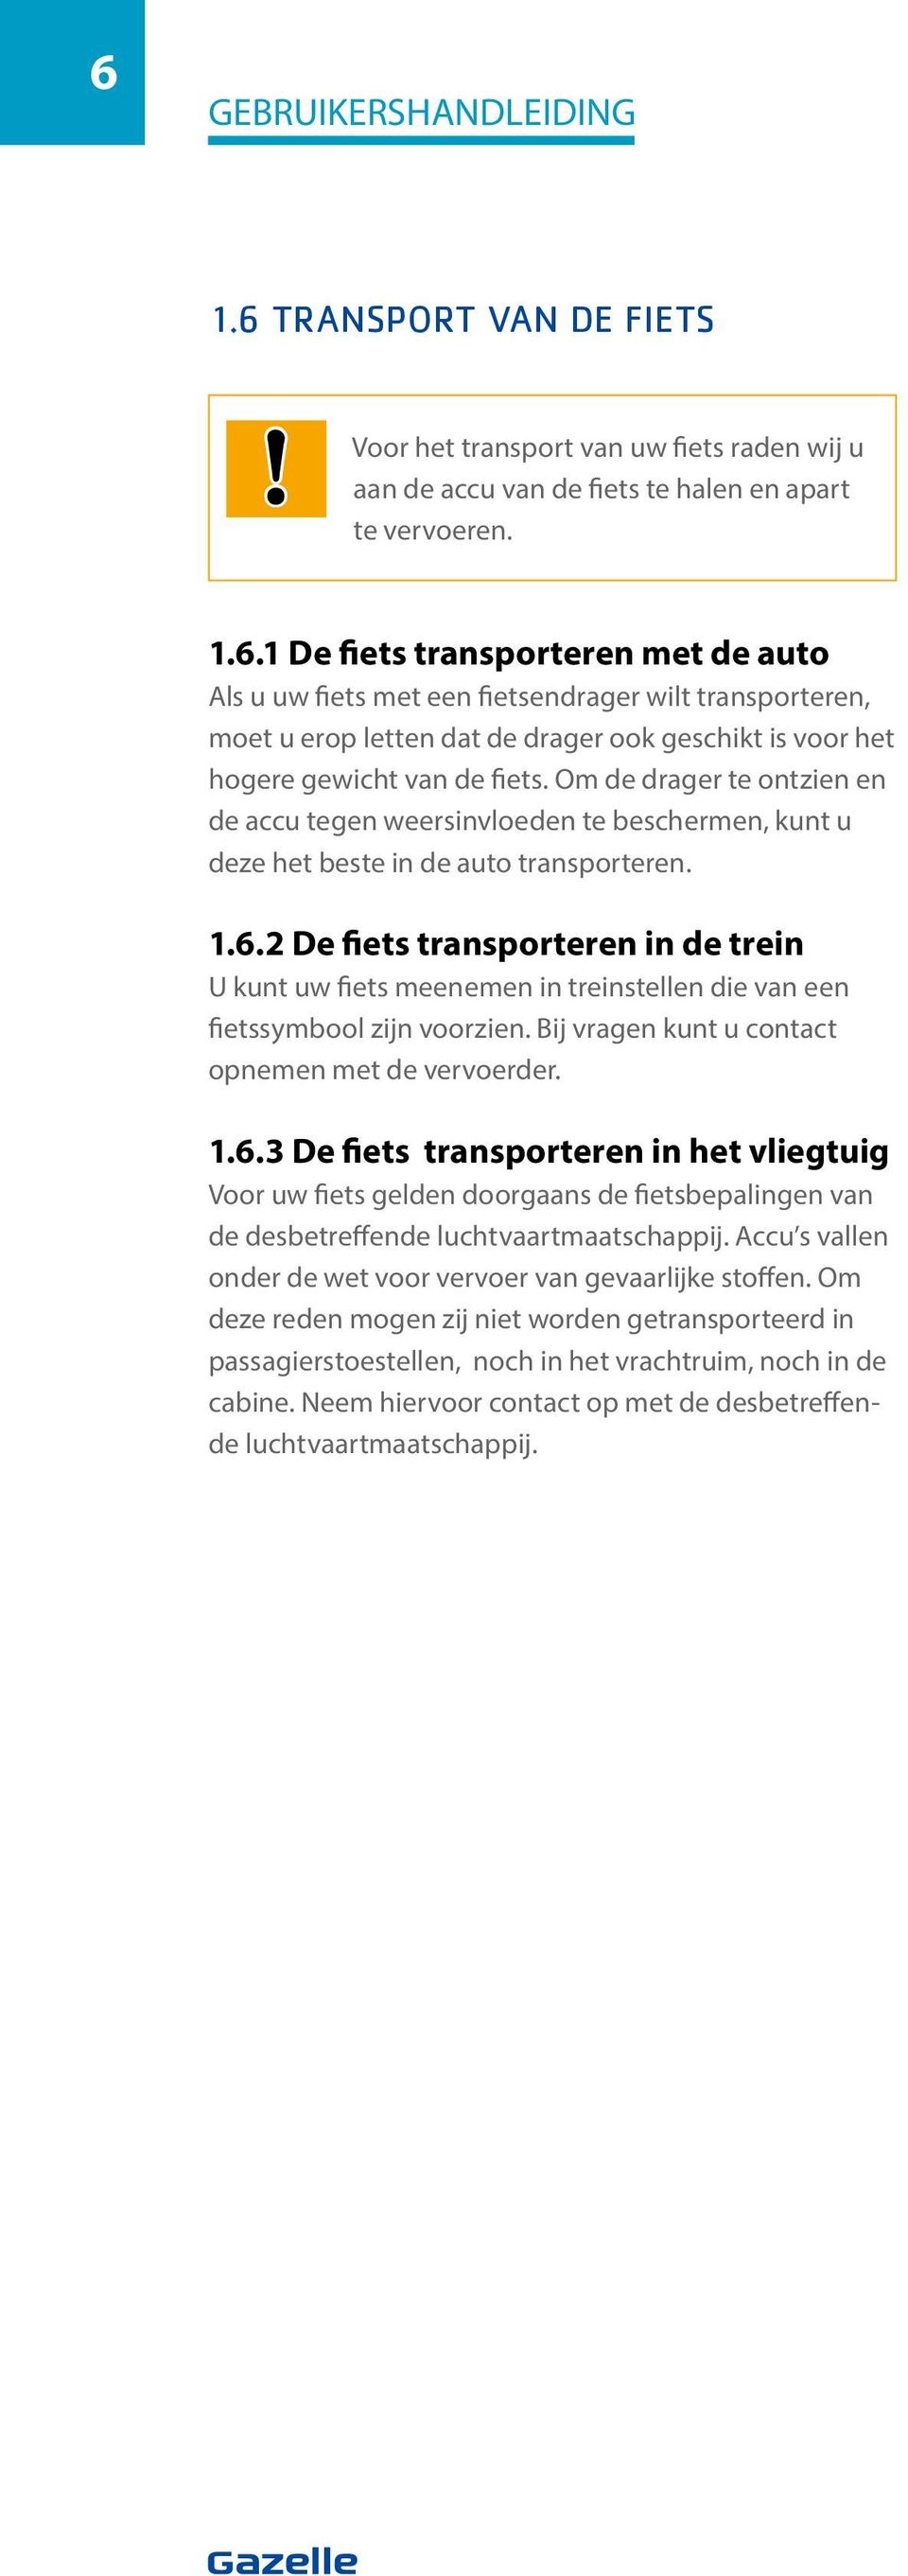 2 De fiets transporteren in de trein U kunt uw fiets meenemen in treinstellen die van een fietssymbool zijn voorzien. Bij vragen kunt u contact opnemen met de vervoerder. 1.6.